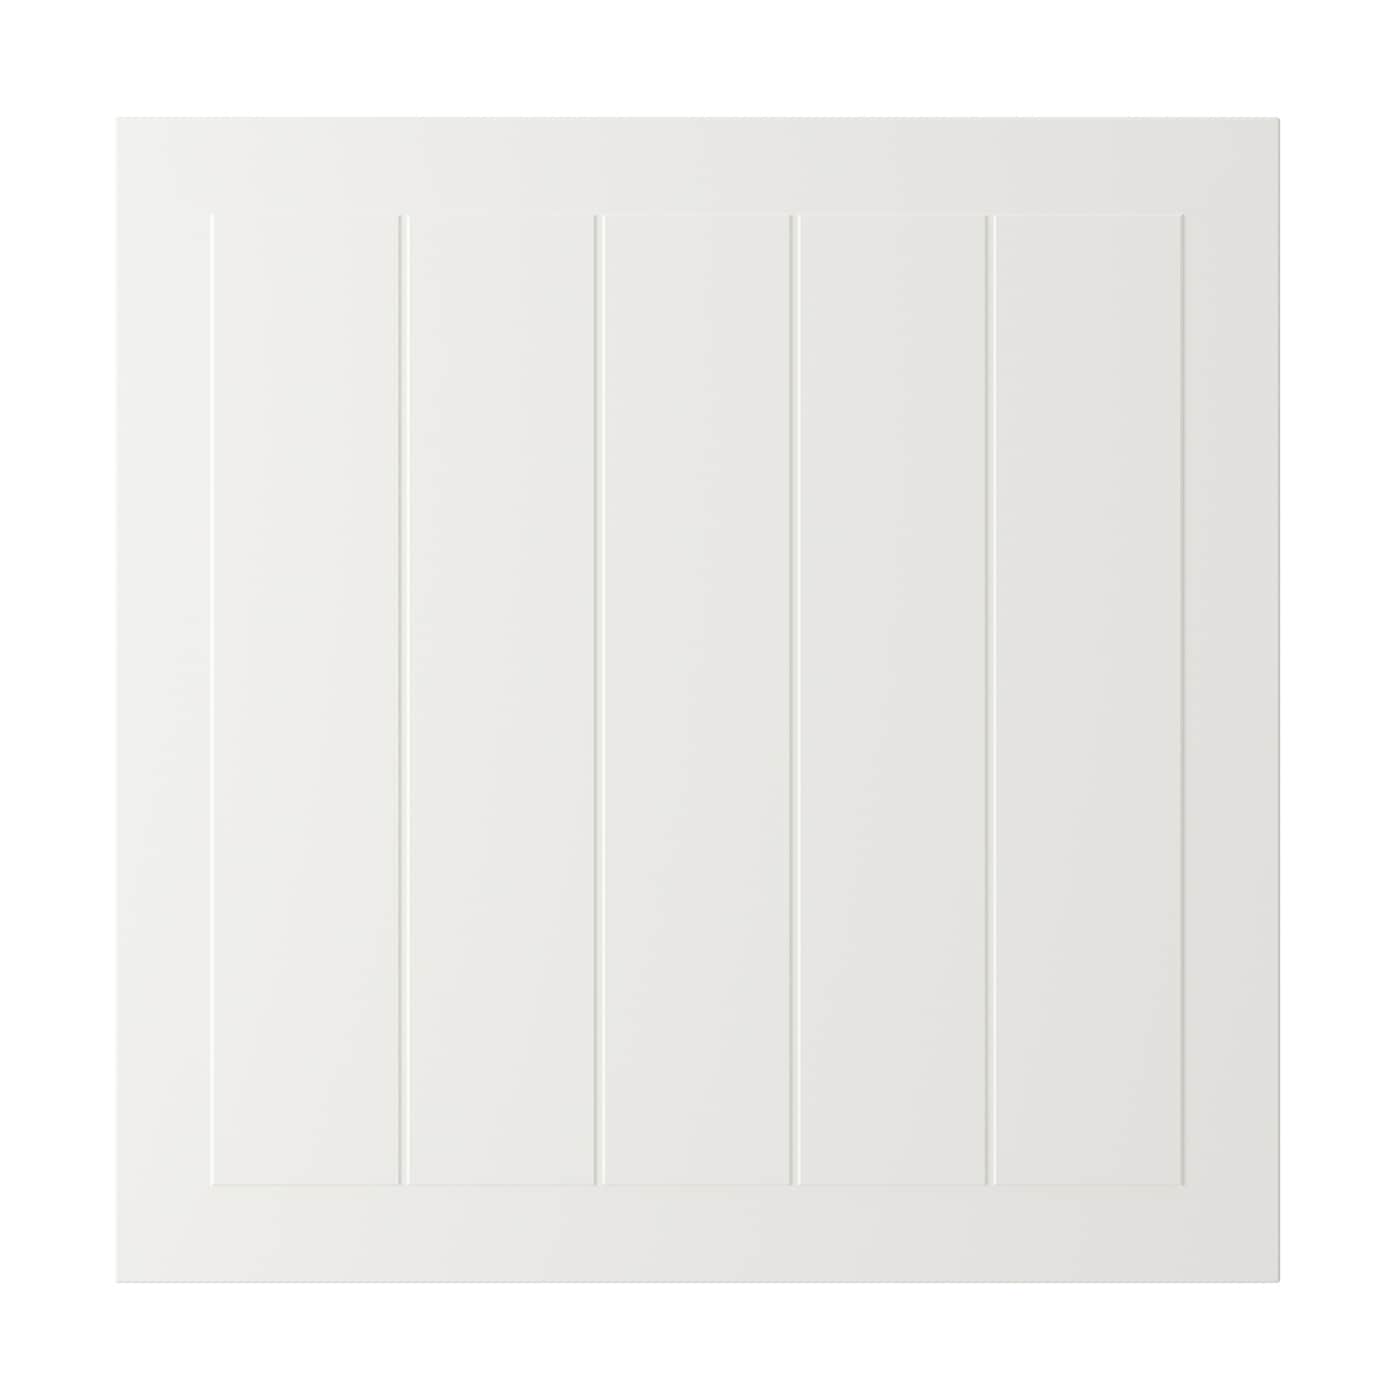 Дверца - IKEA STENSUND, 60х60 см, белый, СТЕНСУНД ИКЕА